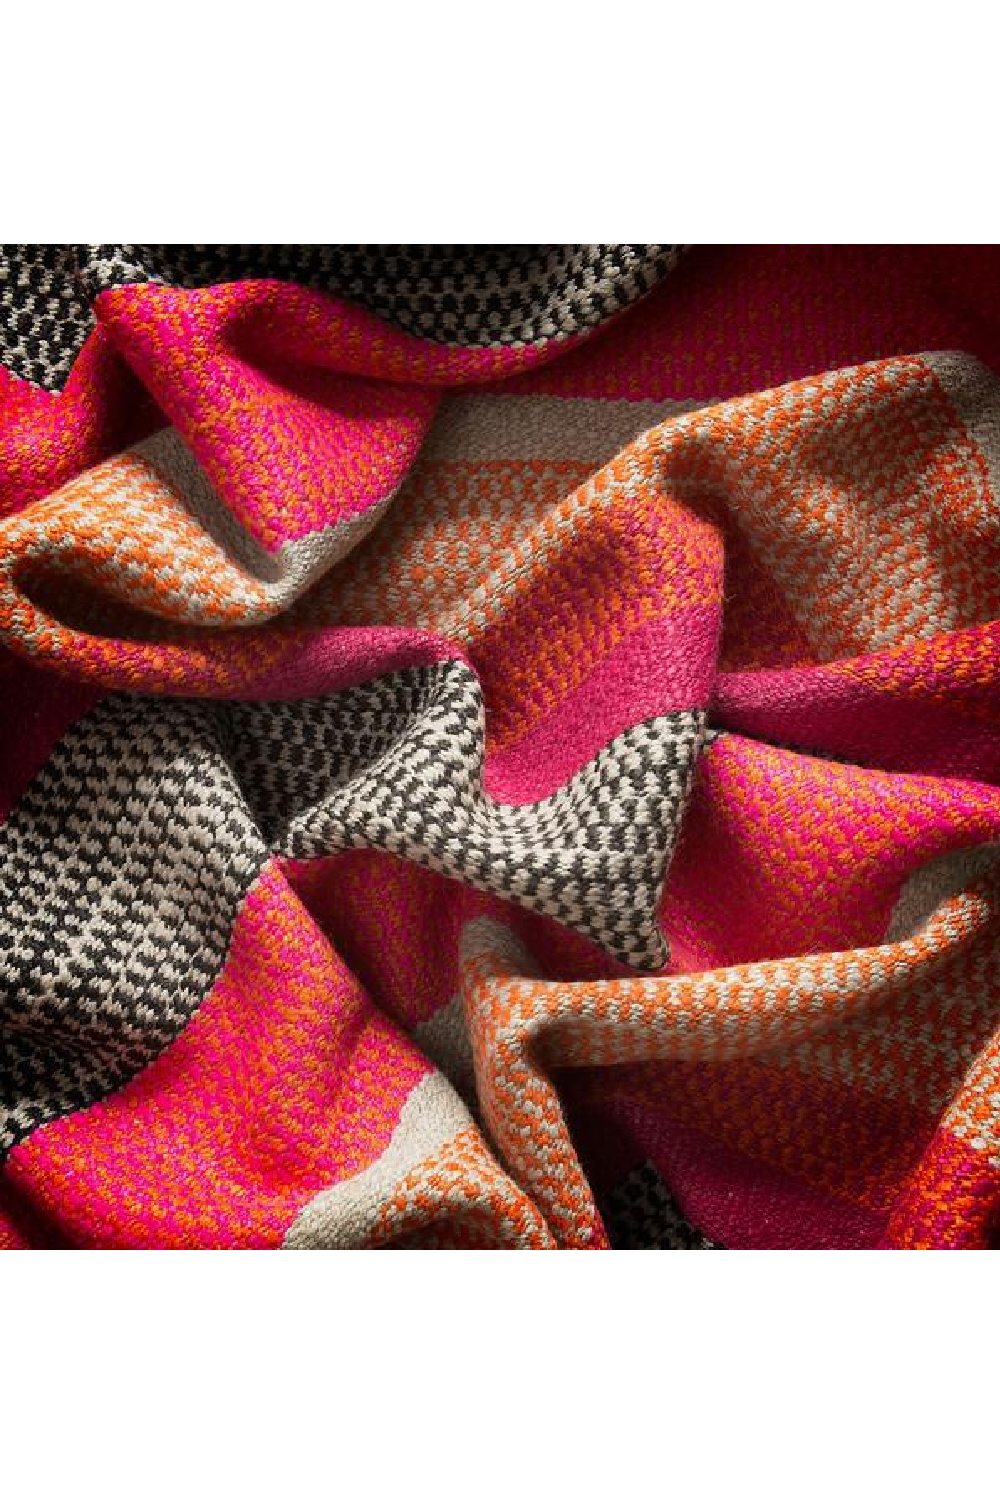 Orange Striped Cushion | Andrew Martin Llama | OROA